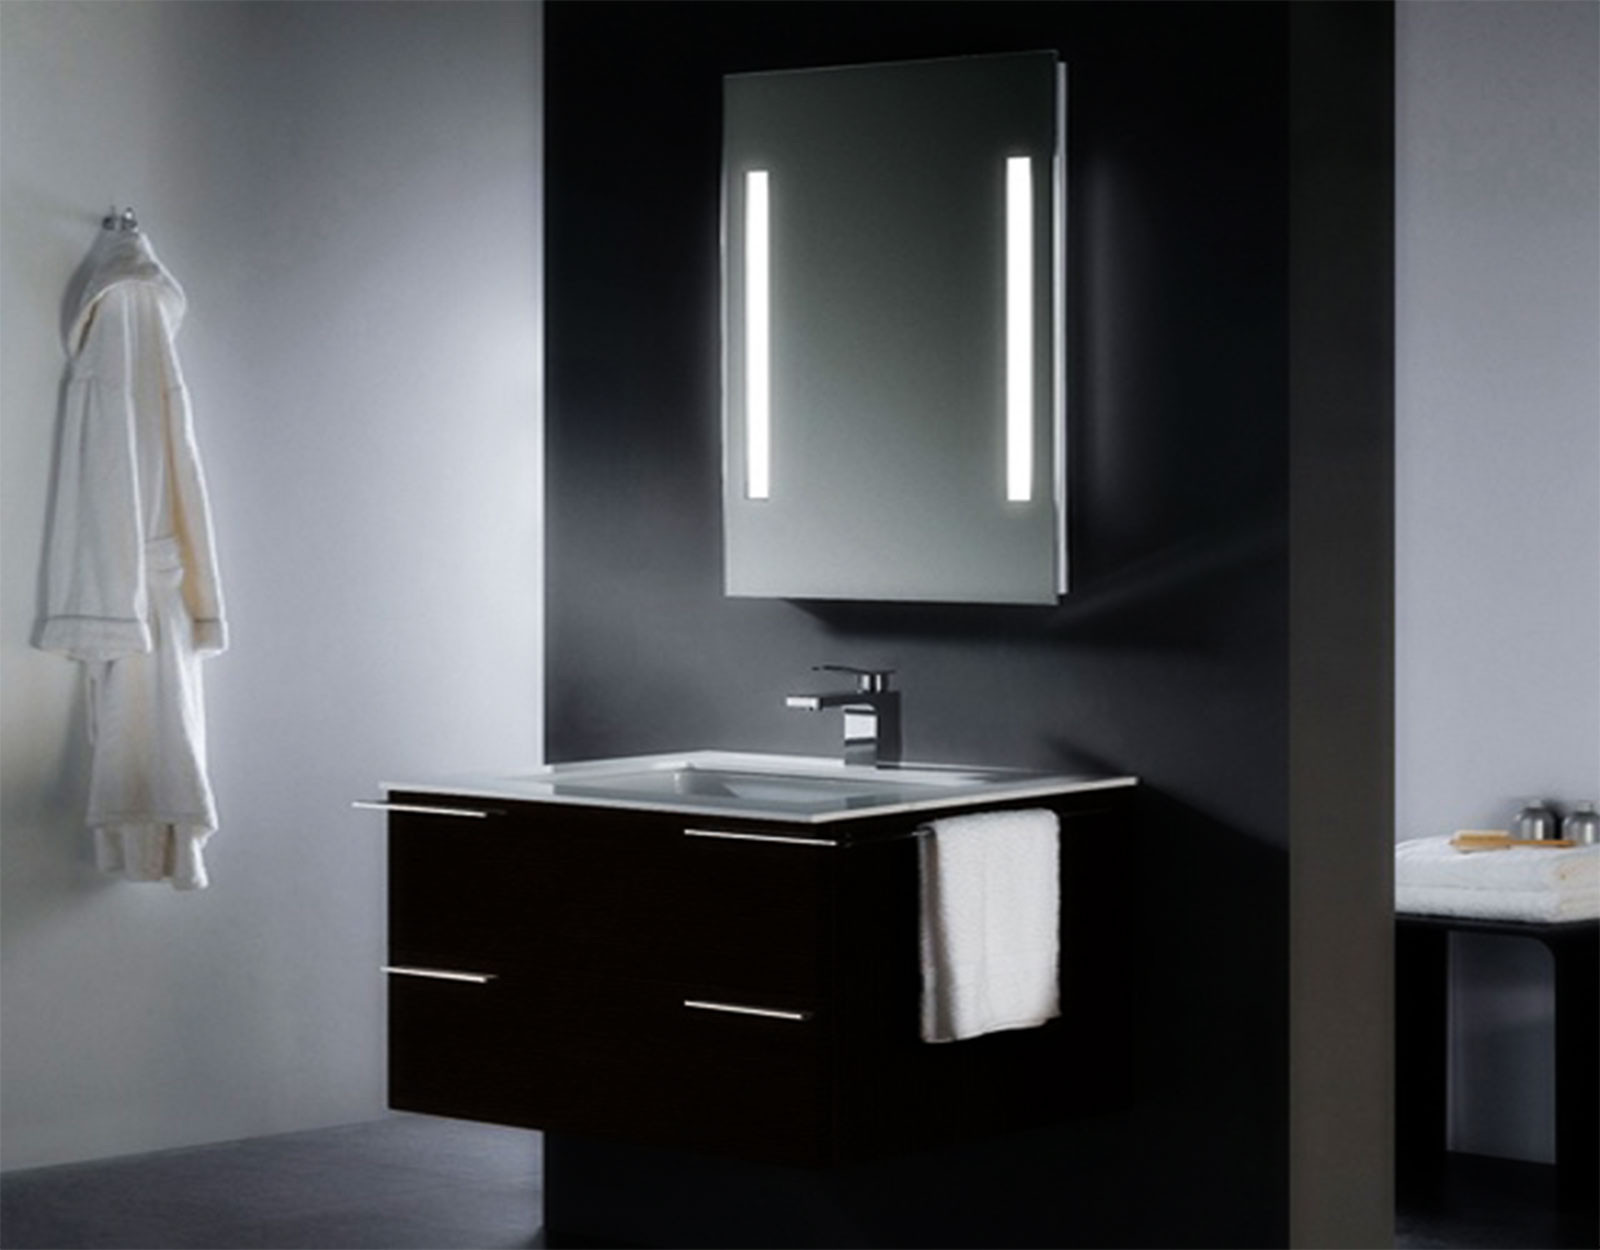 Bathroom Vanity Mirror Lights
 Bathroom Vanity Set With Lighted Mirrors Furniture Ideas